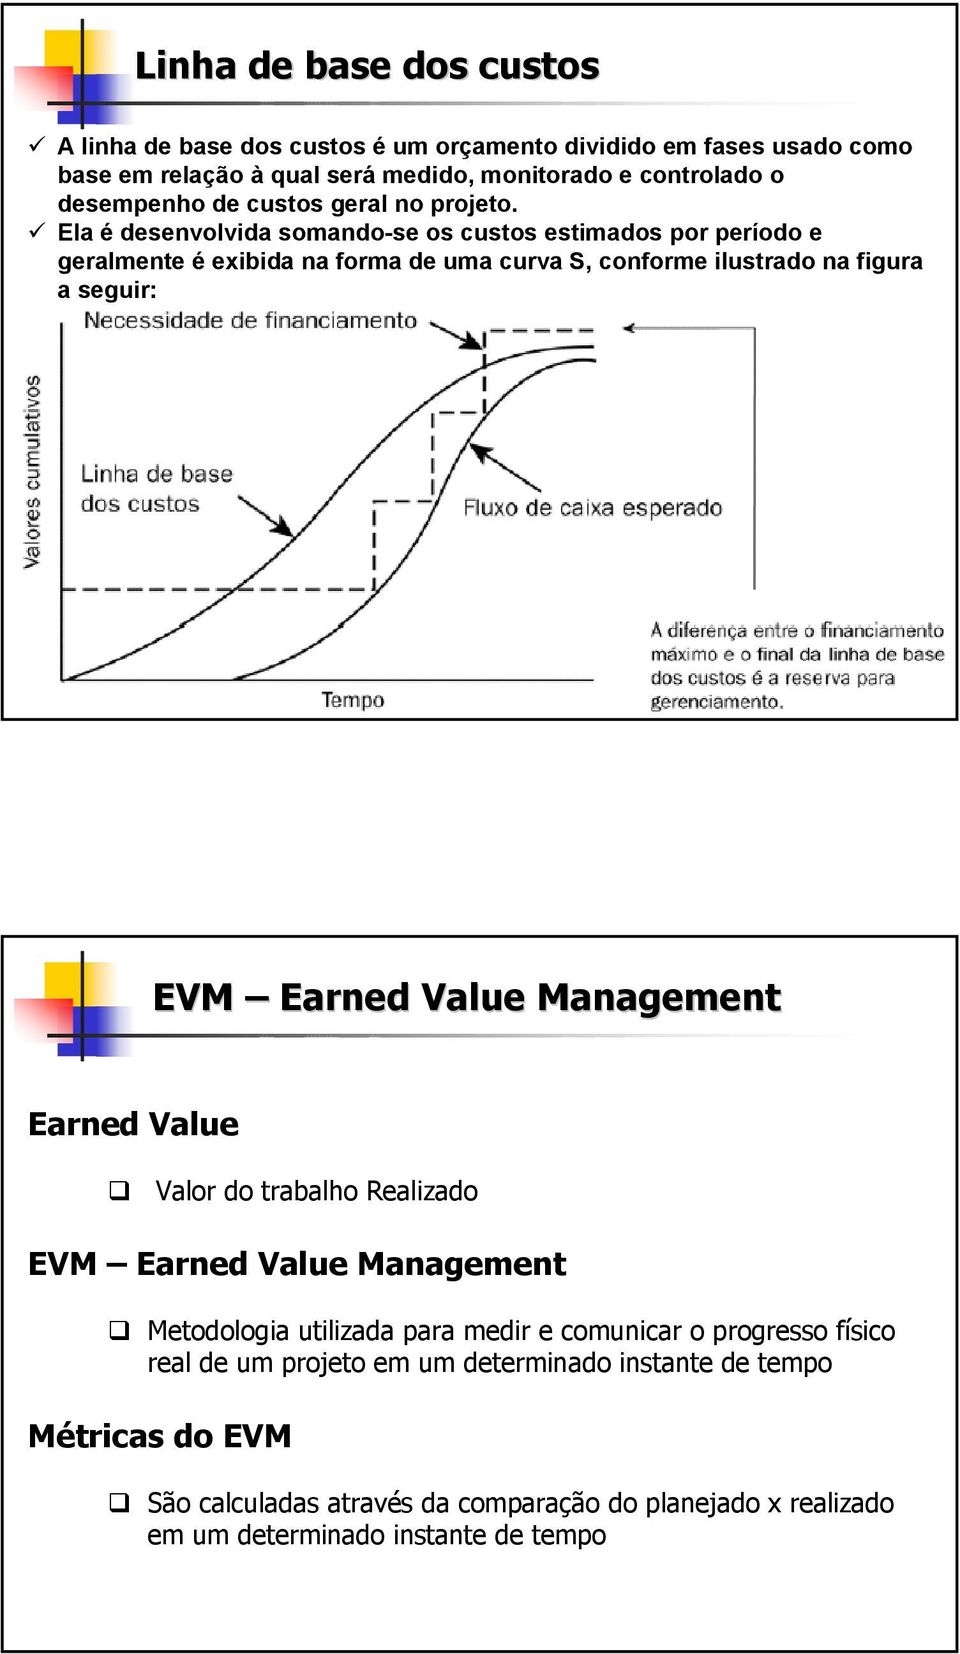 Ela é desenvolvida somando-se os custos estimados por período e geralmente é exibida na forma de uma curva S, conforme ilustrado na figura a seguir: EVM Earned Value